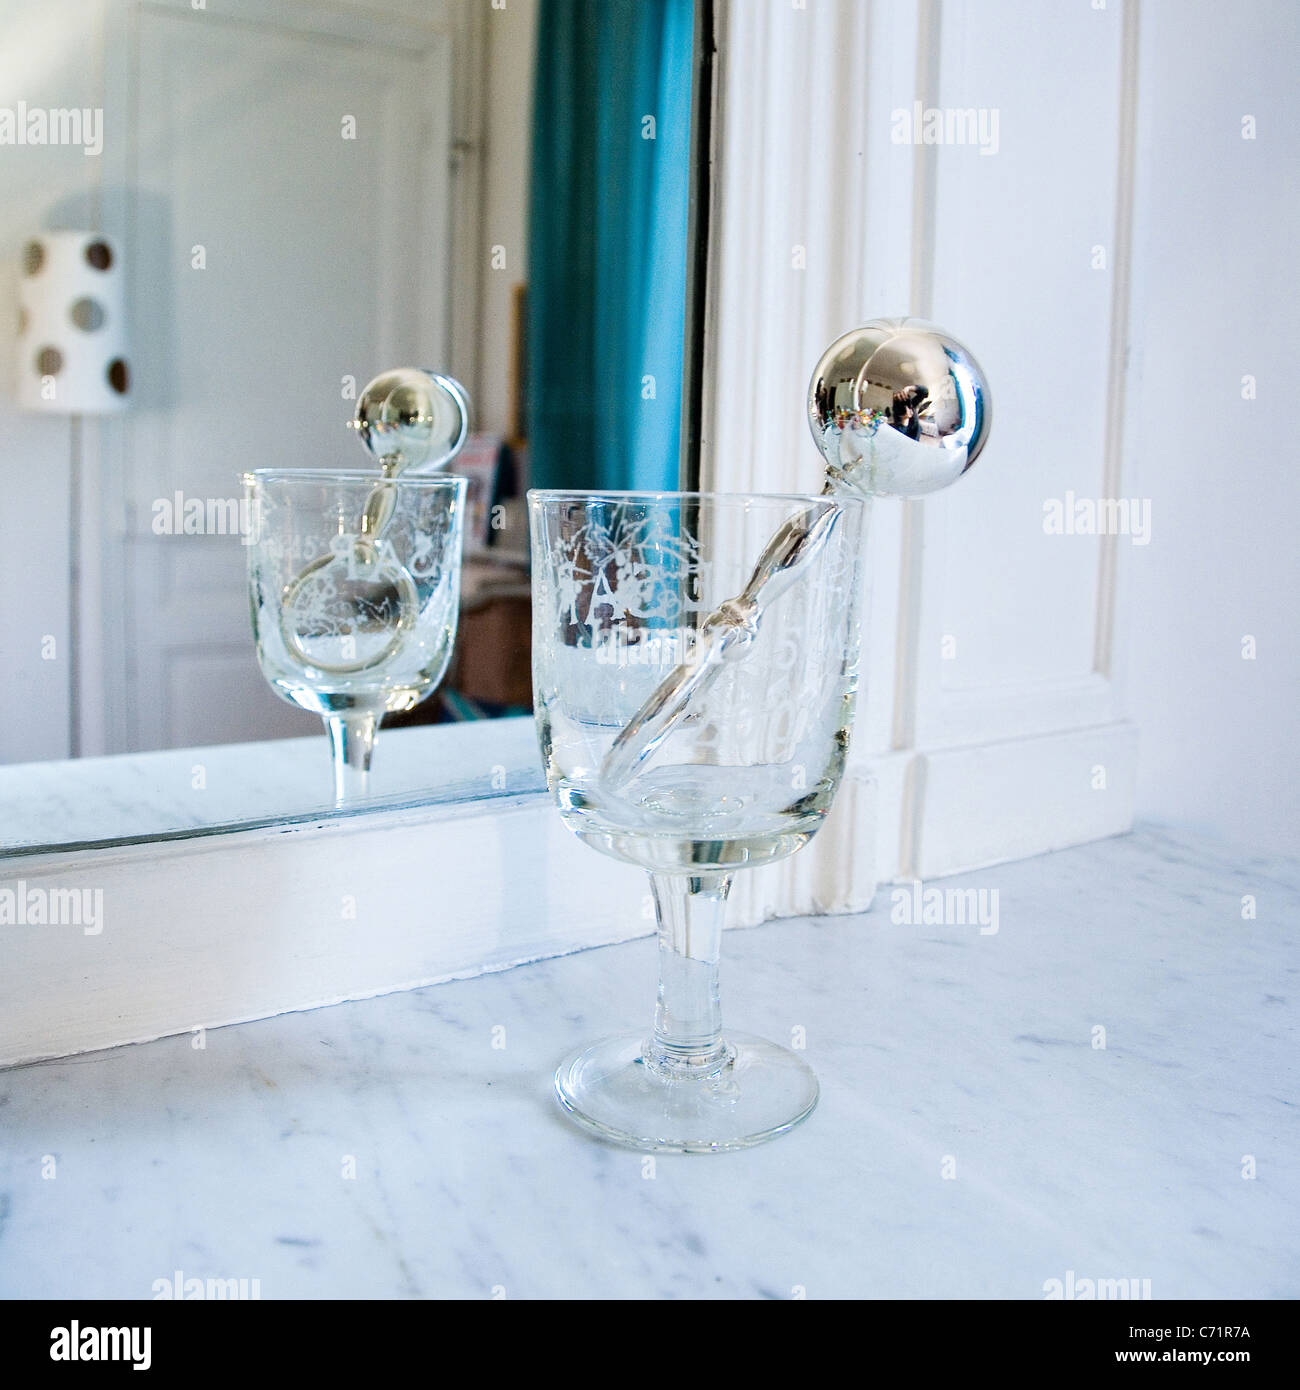 Silberne Rassel in stemmed Glas vor Spiegel Stockfoto